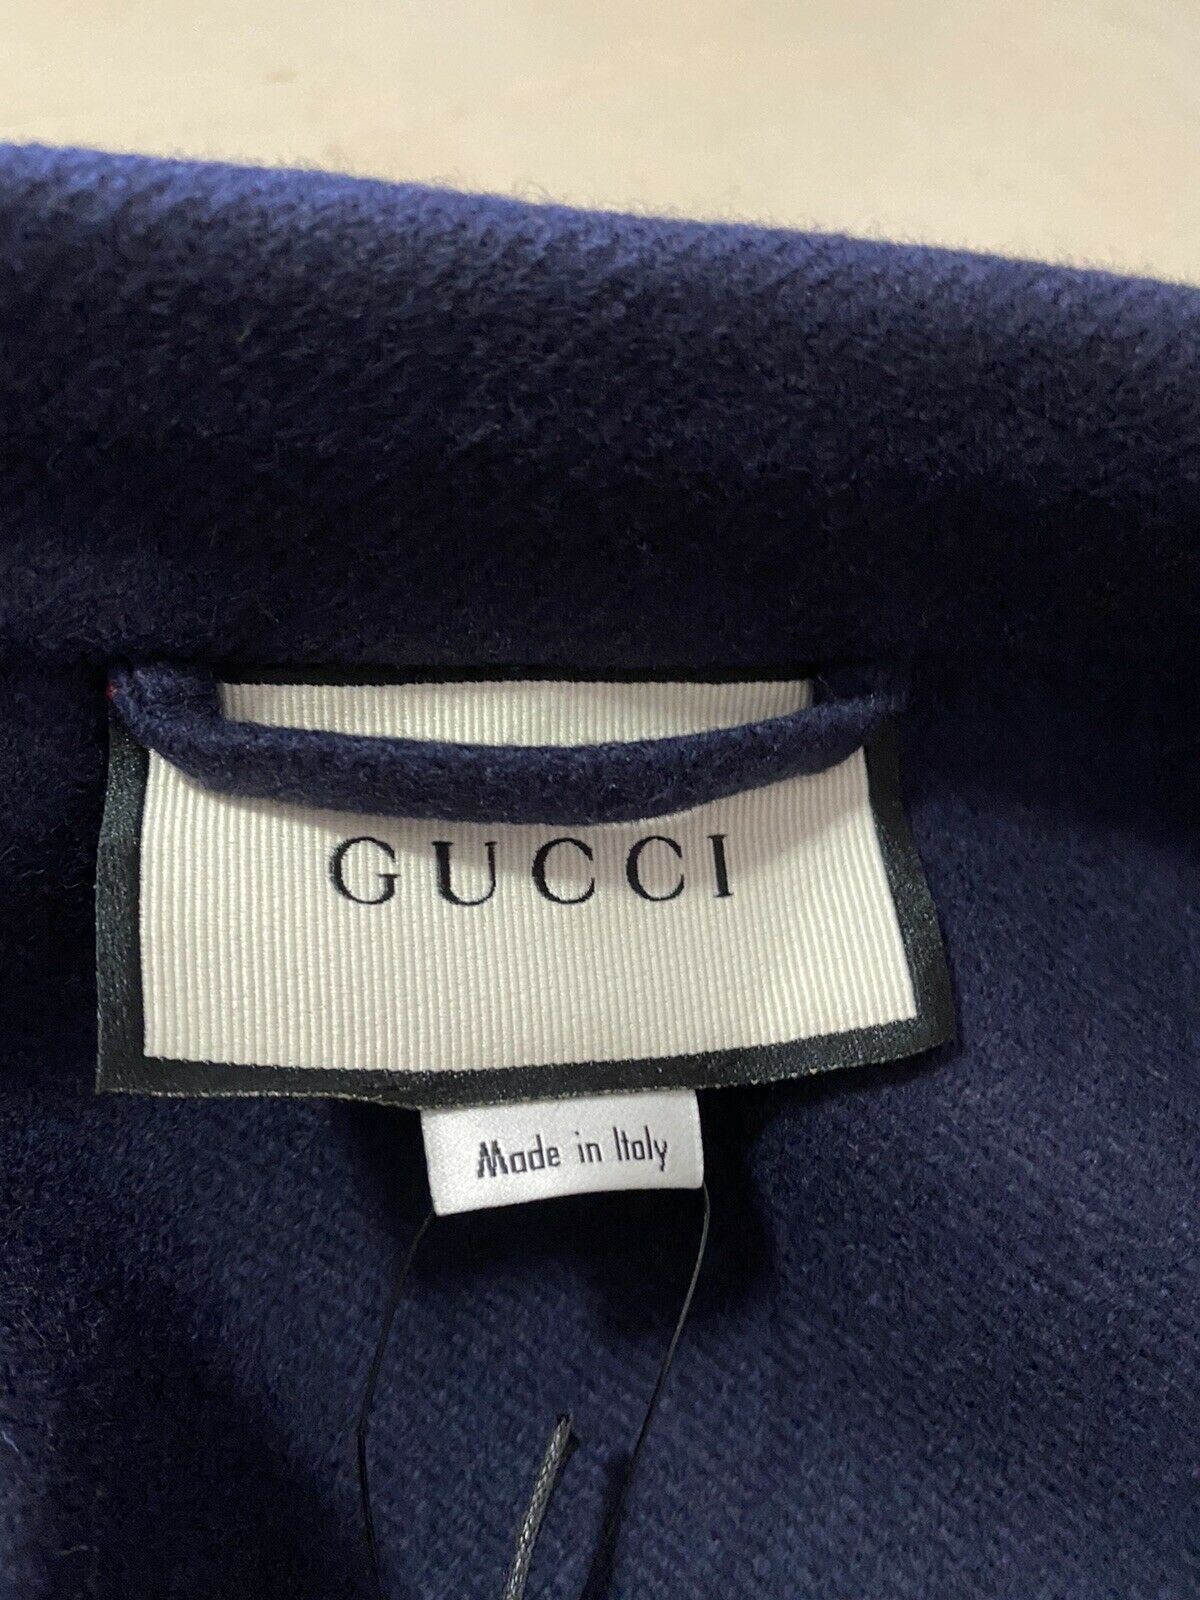 Neuer 4700 $ Gucci Herren-Mantel aus Kamelhaar, Marineblau, 38 US/48 Eu, Italien